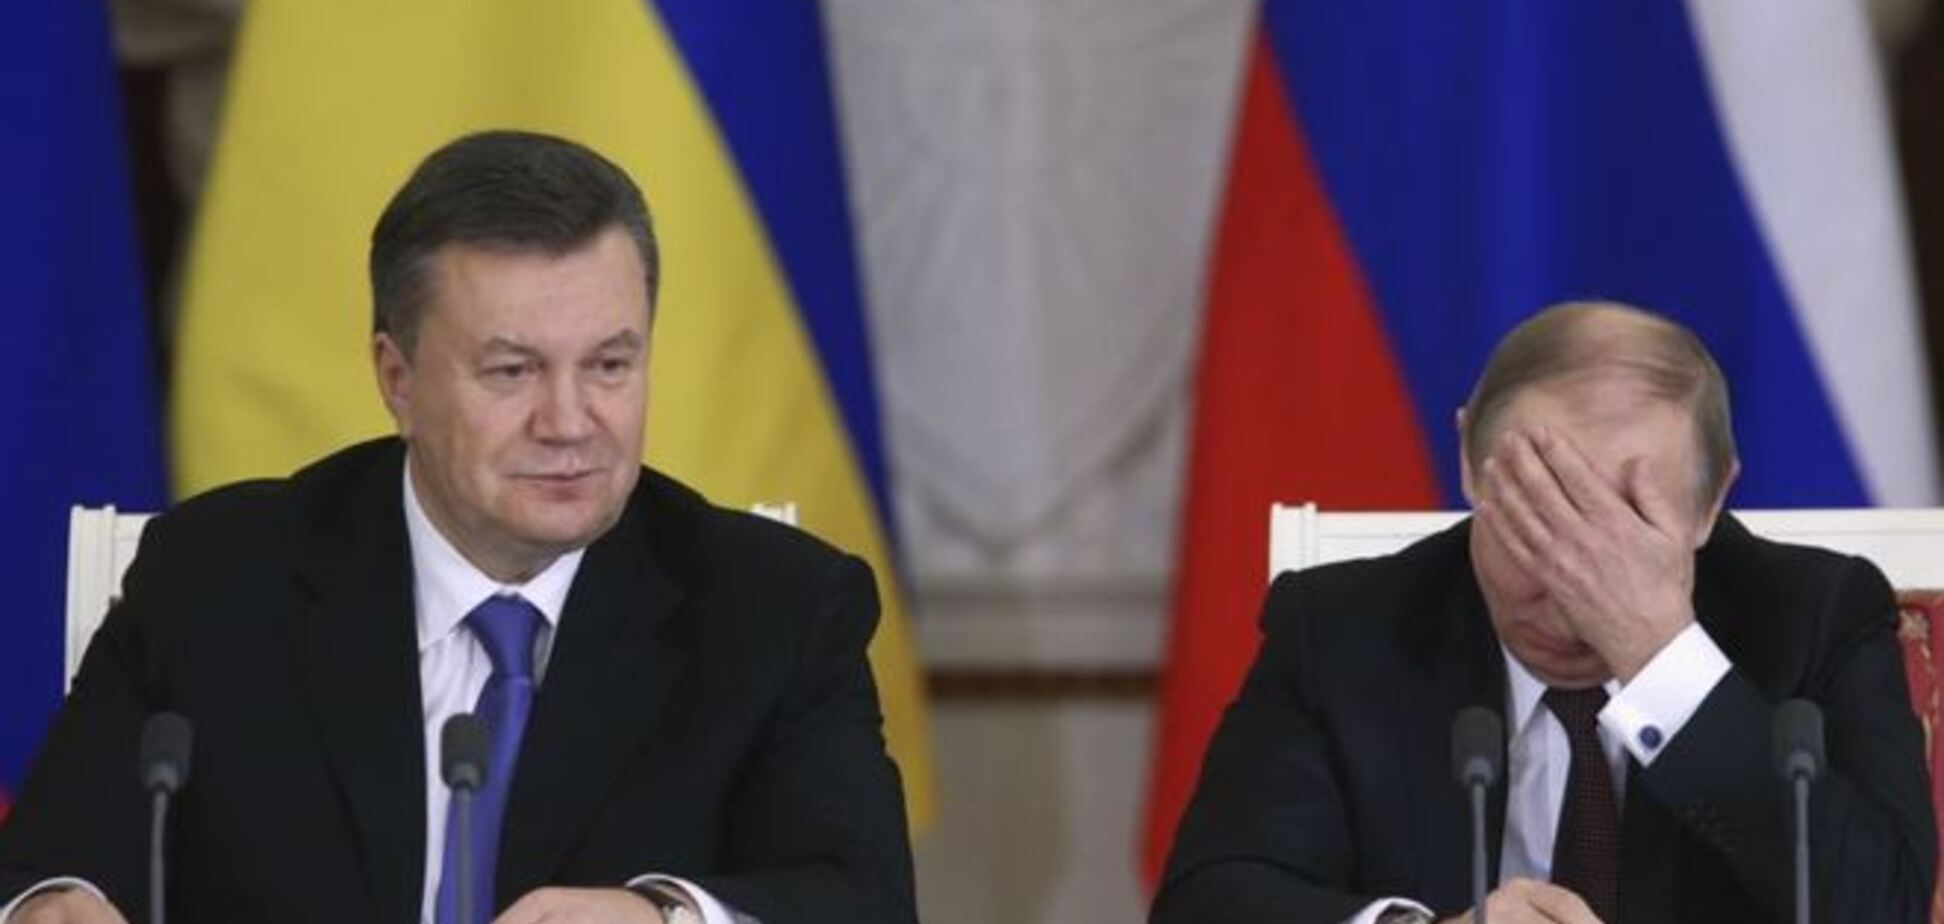 Кто больше виноват - Путин или Янукович